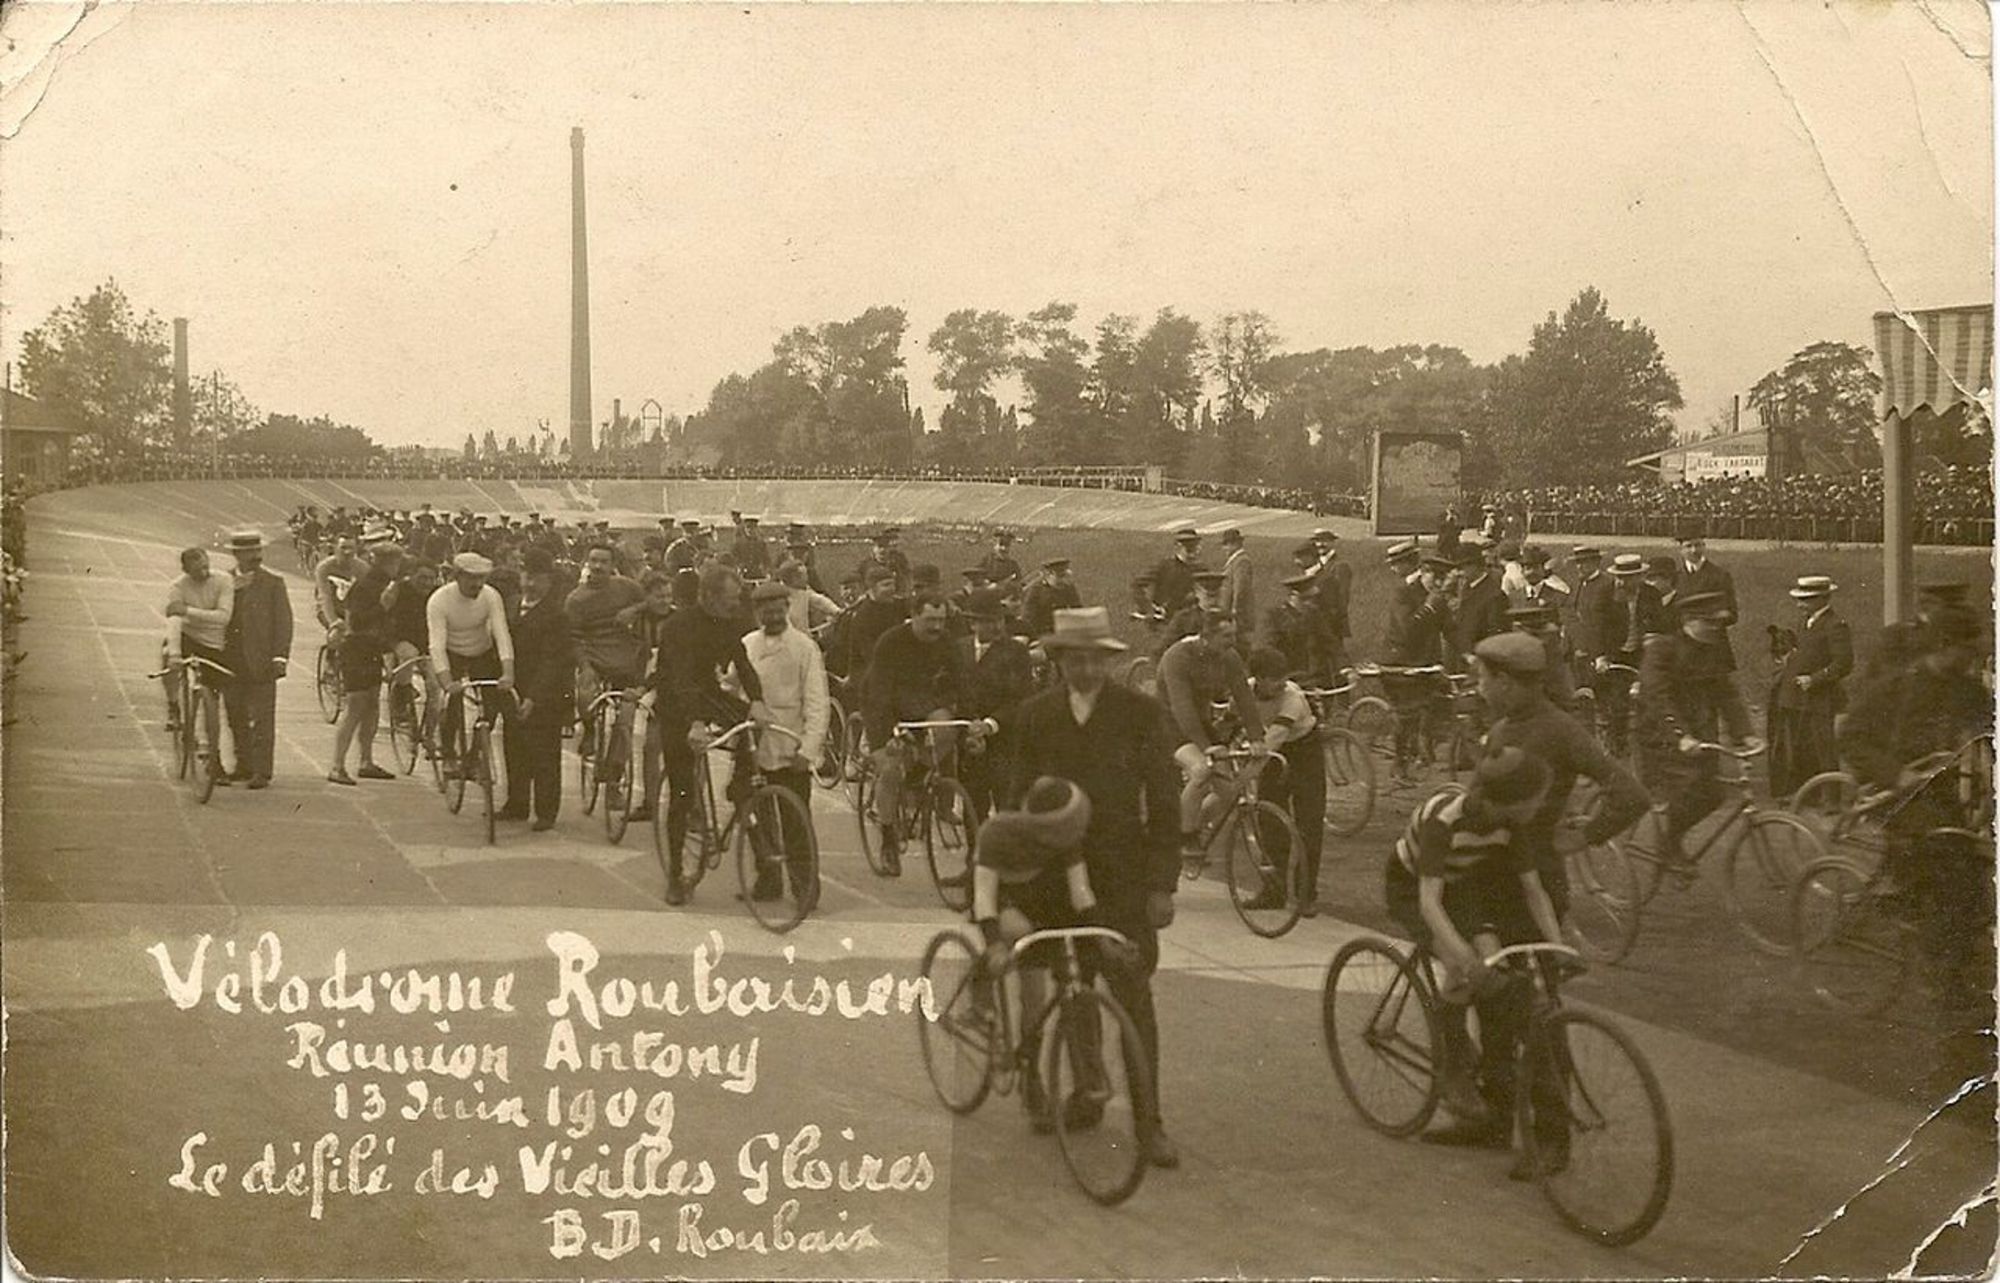 Vélodrome roubaisien, réunion Antony le 13 juin 1909. Le défilé des vieilles gloires. BD. Roubaix 